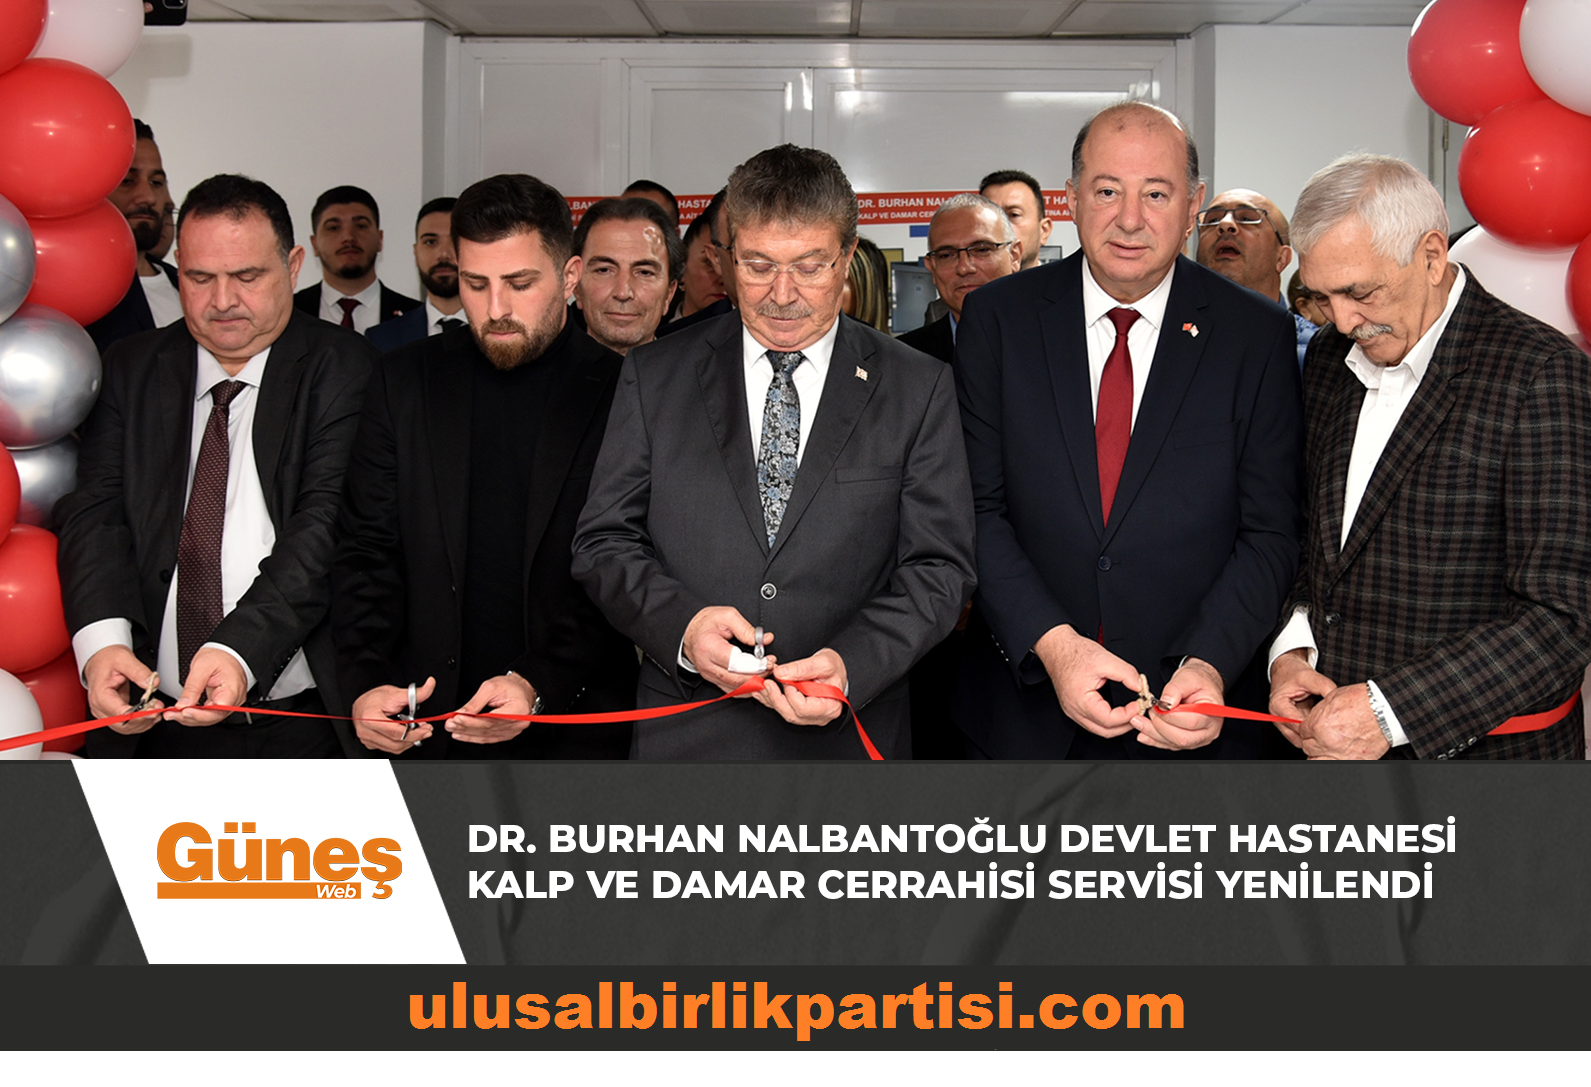 Read more about the article Dr. Burhan Nalbantoğlu Devlet Hastanesi Kalp ve Damar Cerrahisi servisi yenilendi